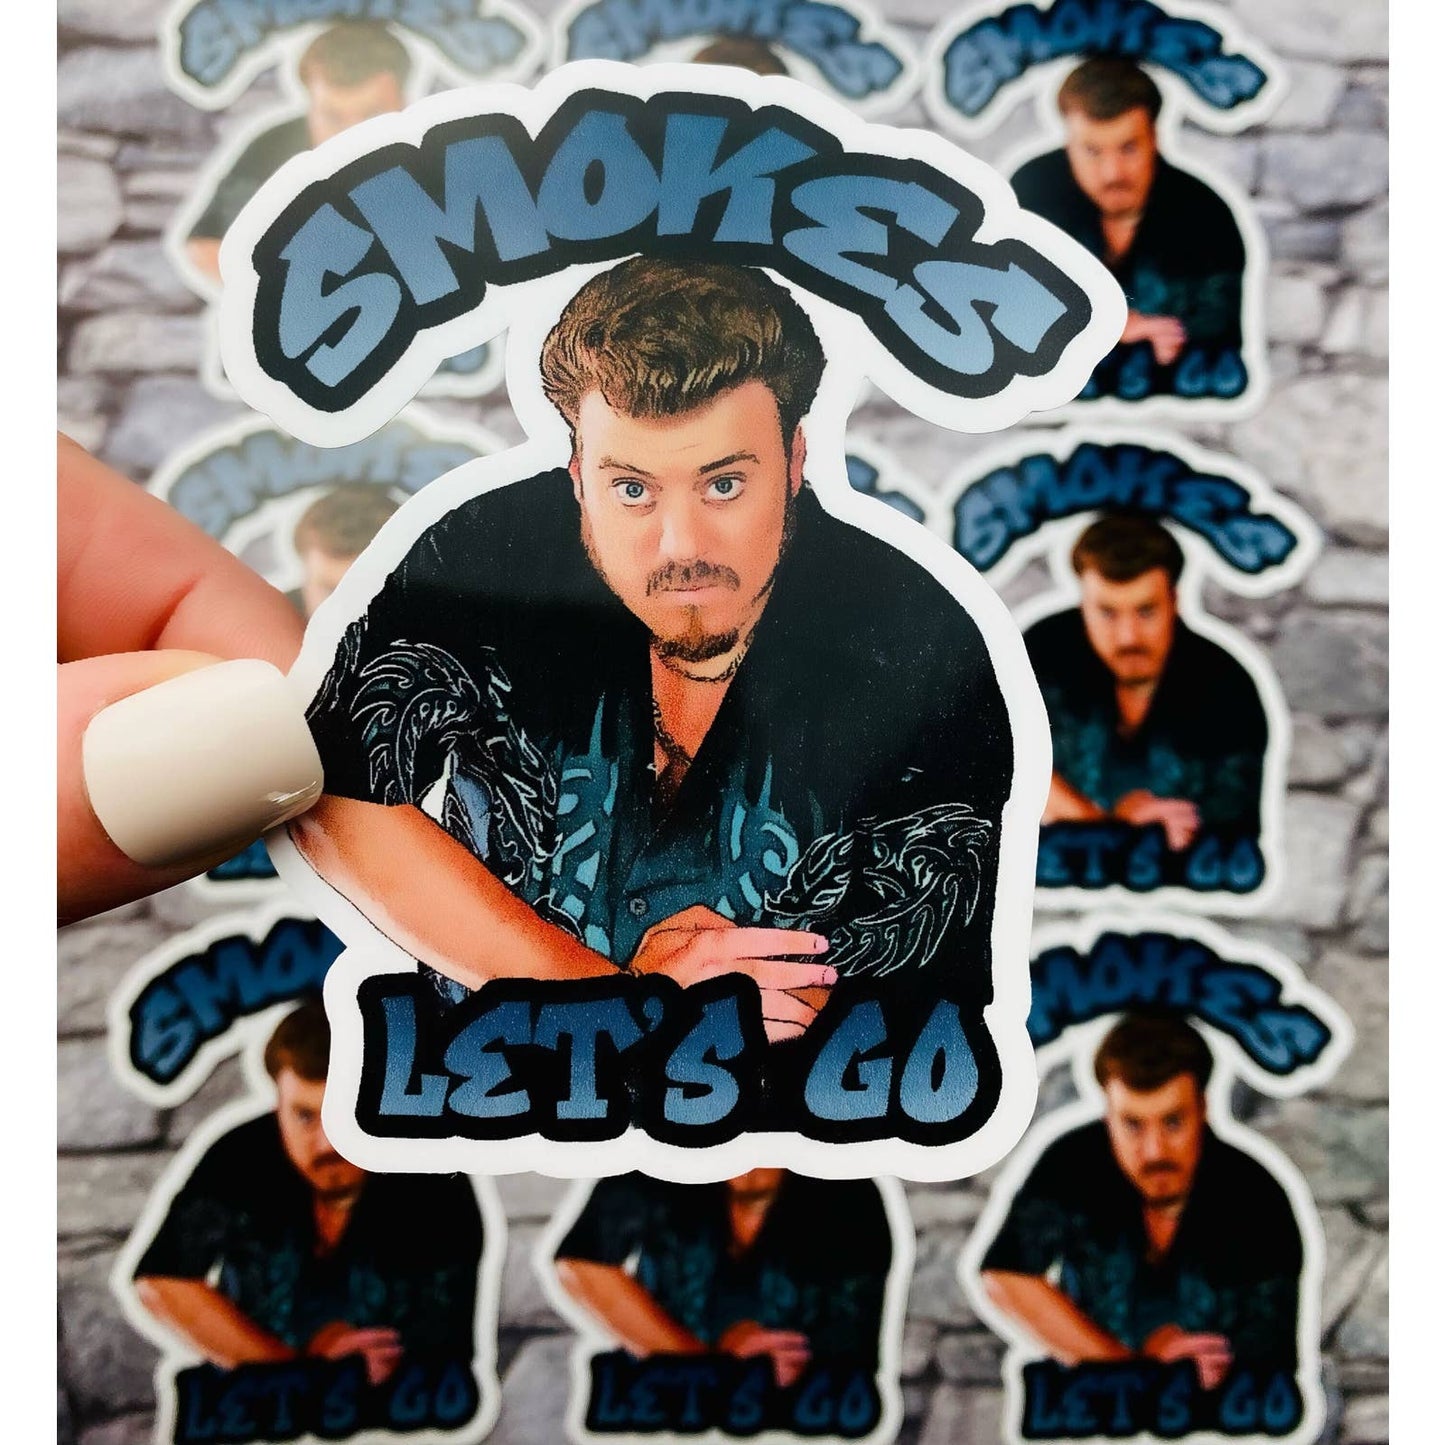 Trailer Park Boys Ricky Sticker | Smokes Let's Go | Officially Licensed Trailer Park Boys Sticker